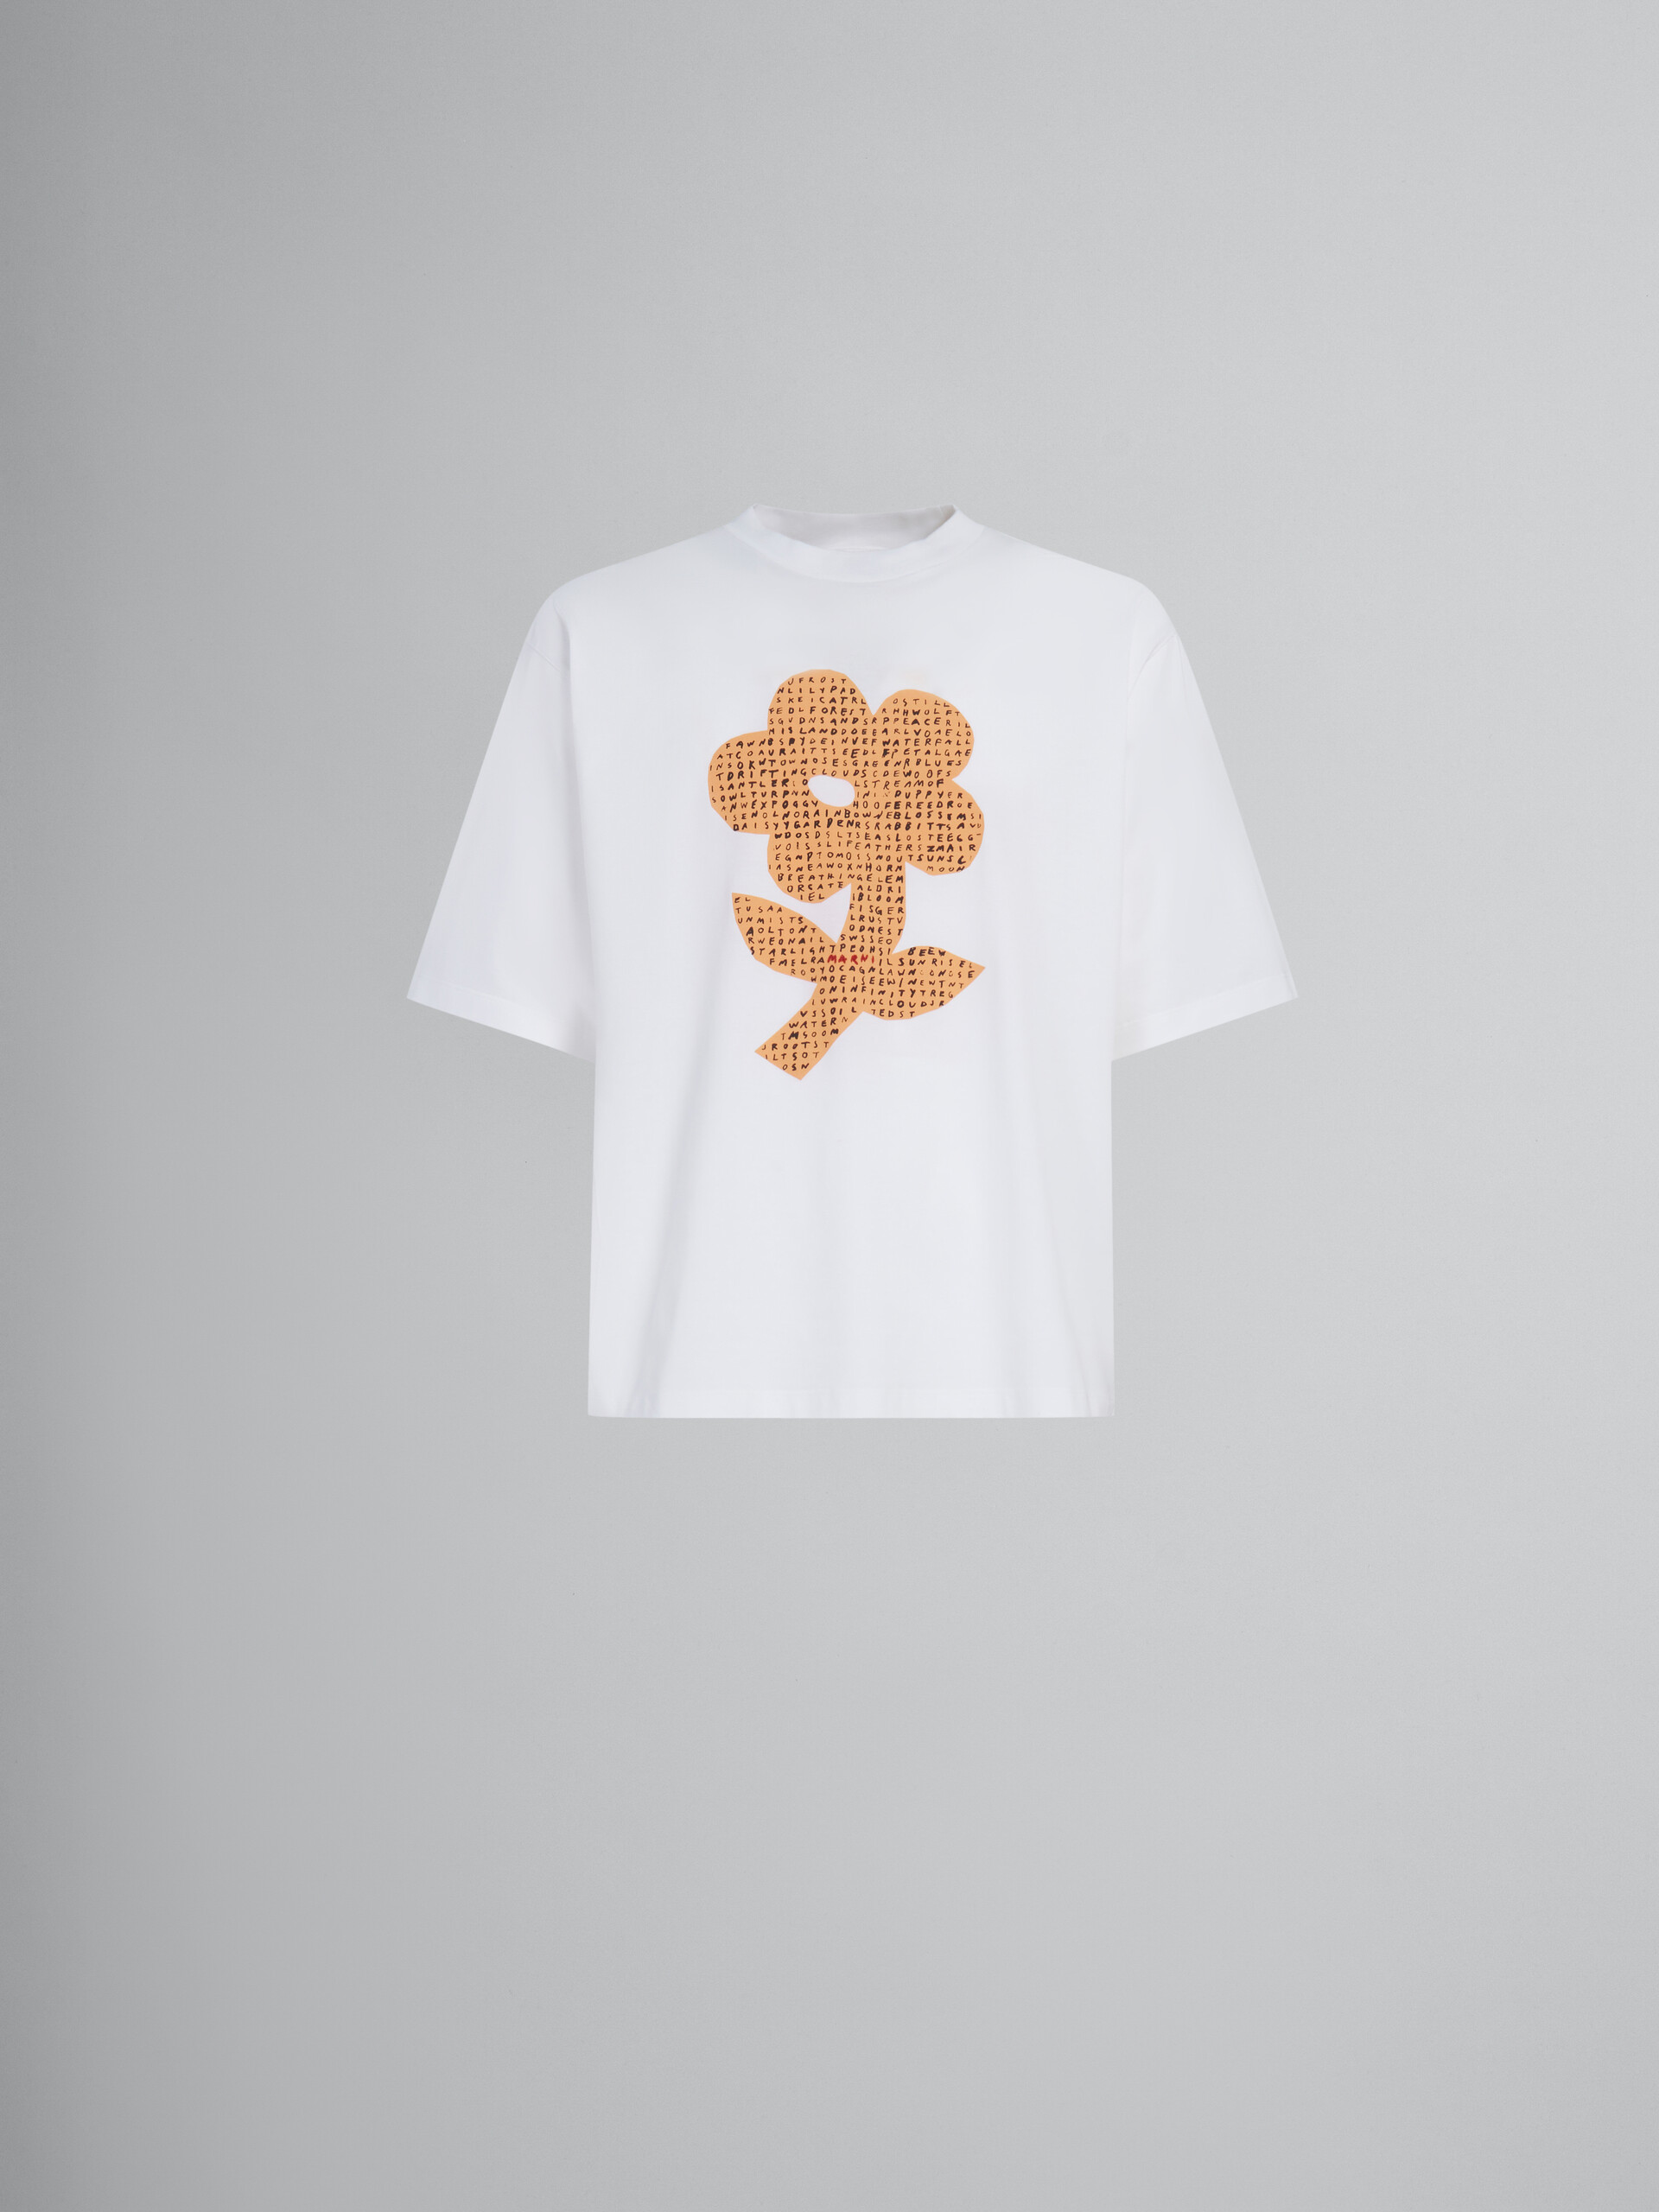 Weißes T-Shirt aus Bio-Baumwolle mit Wordsearch-Blumenprint - T-shirts - Image 1